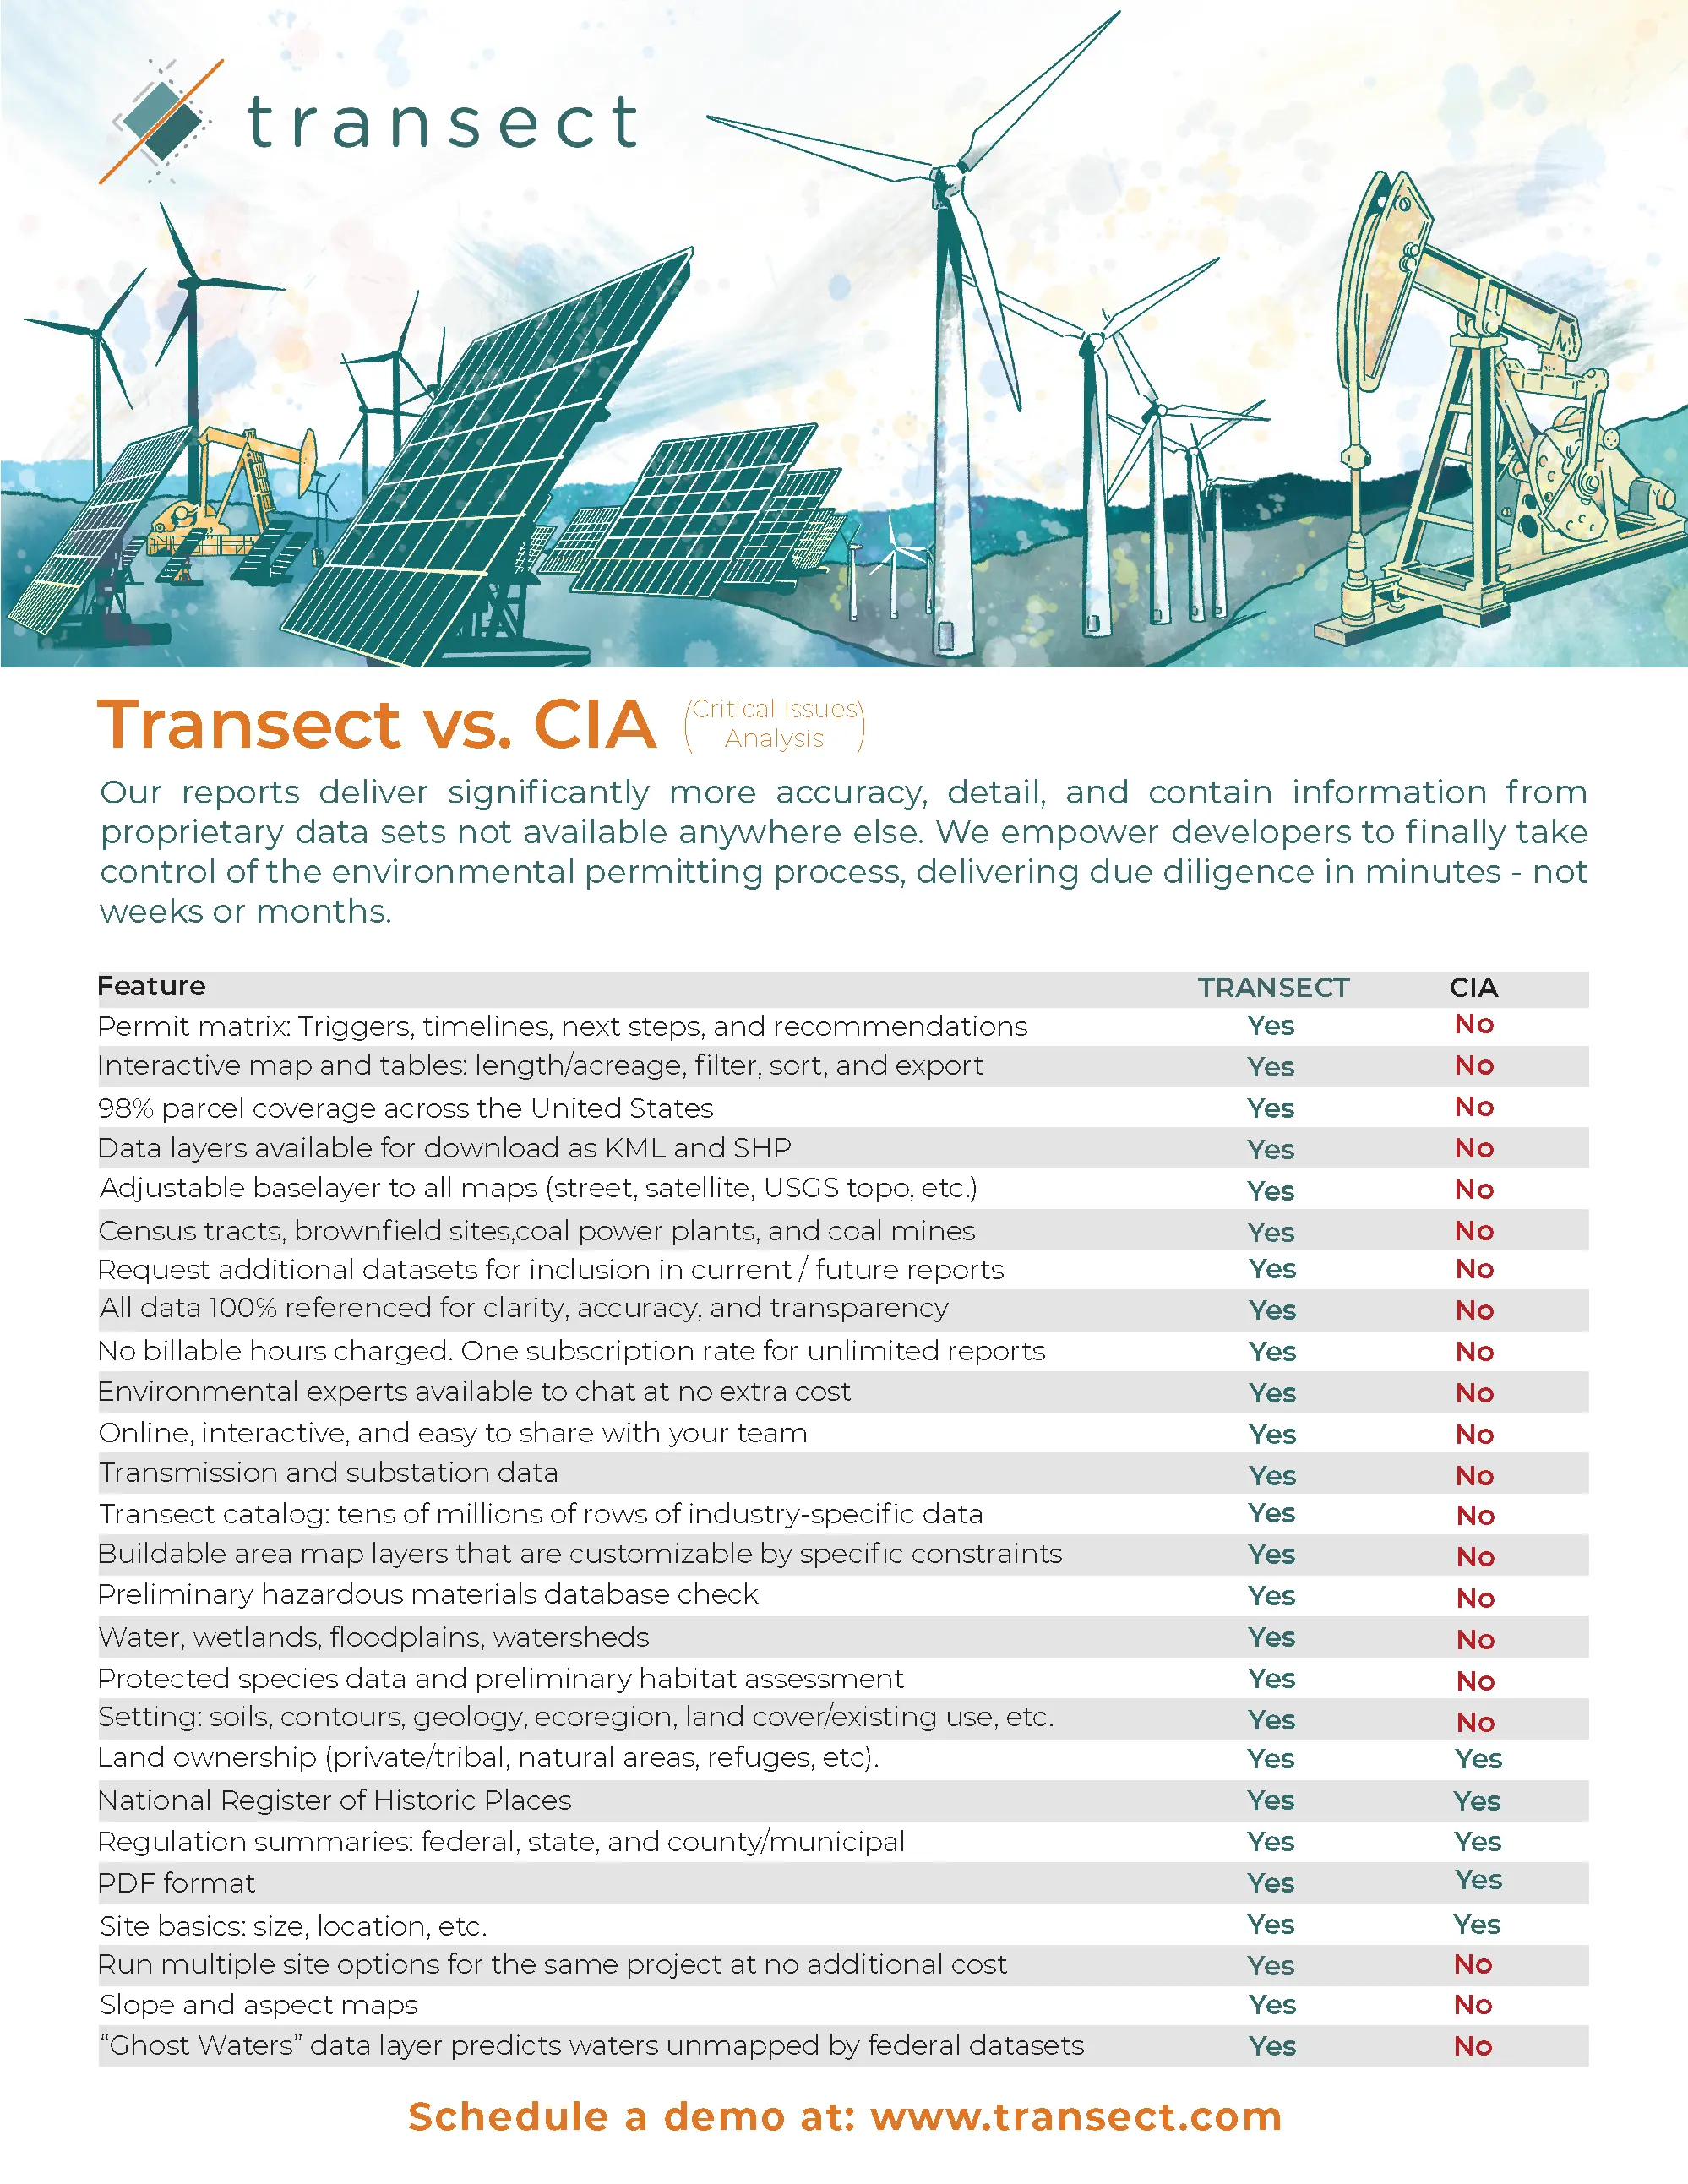 Transect_vs_CIA